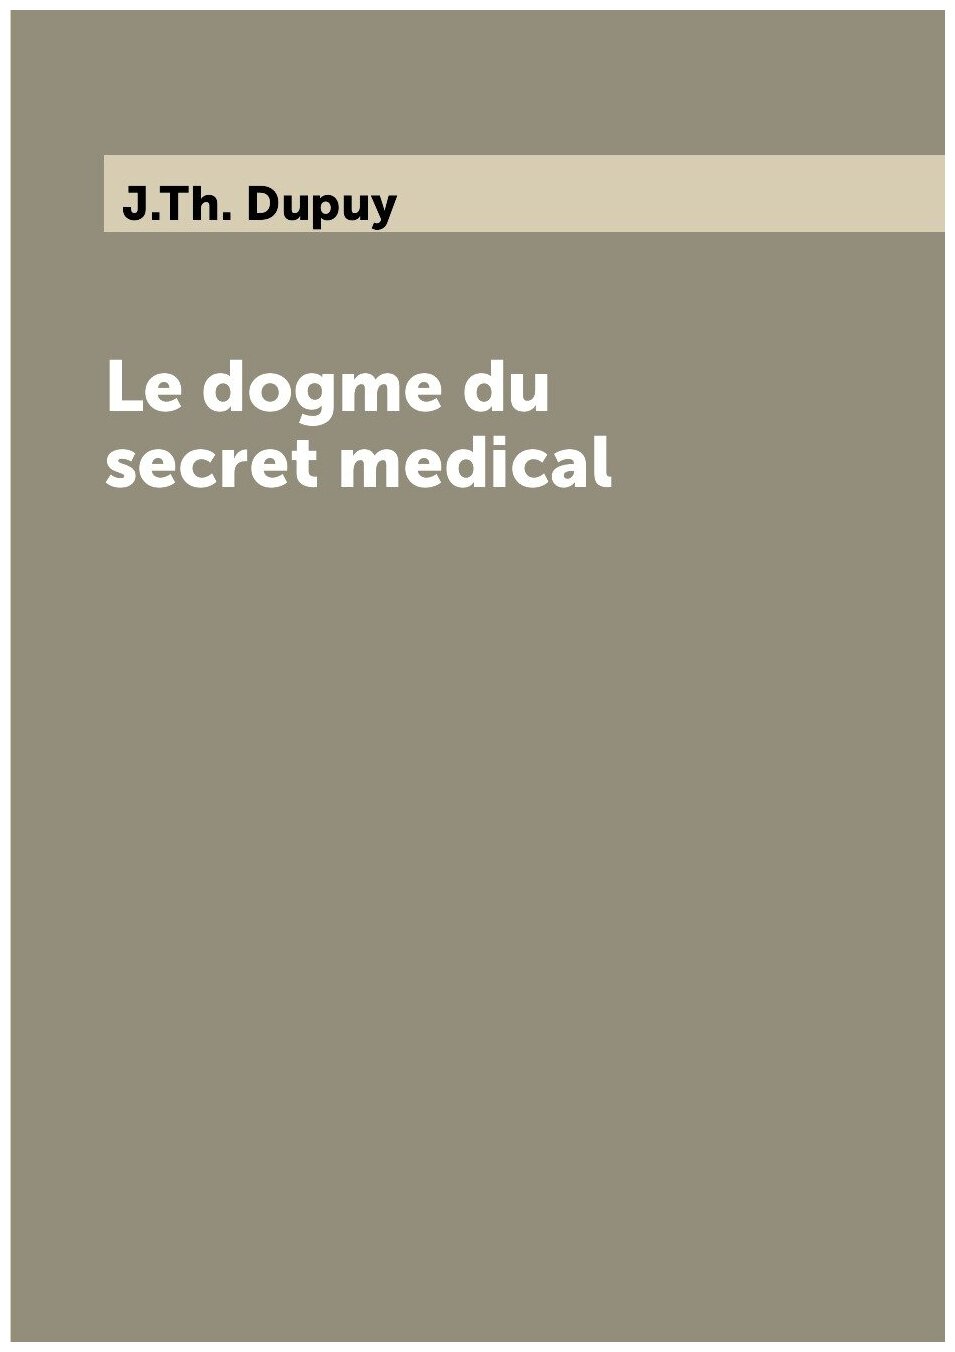 Le dogme du secret medical